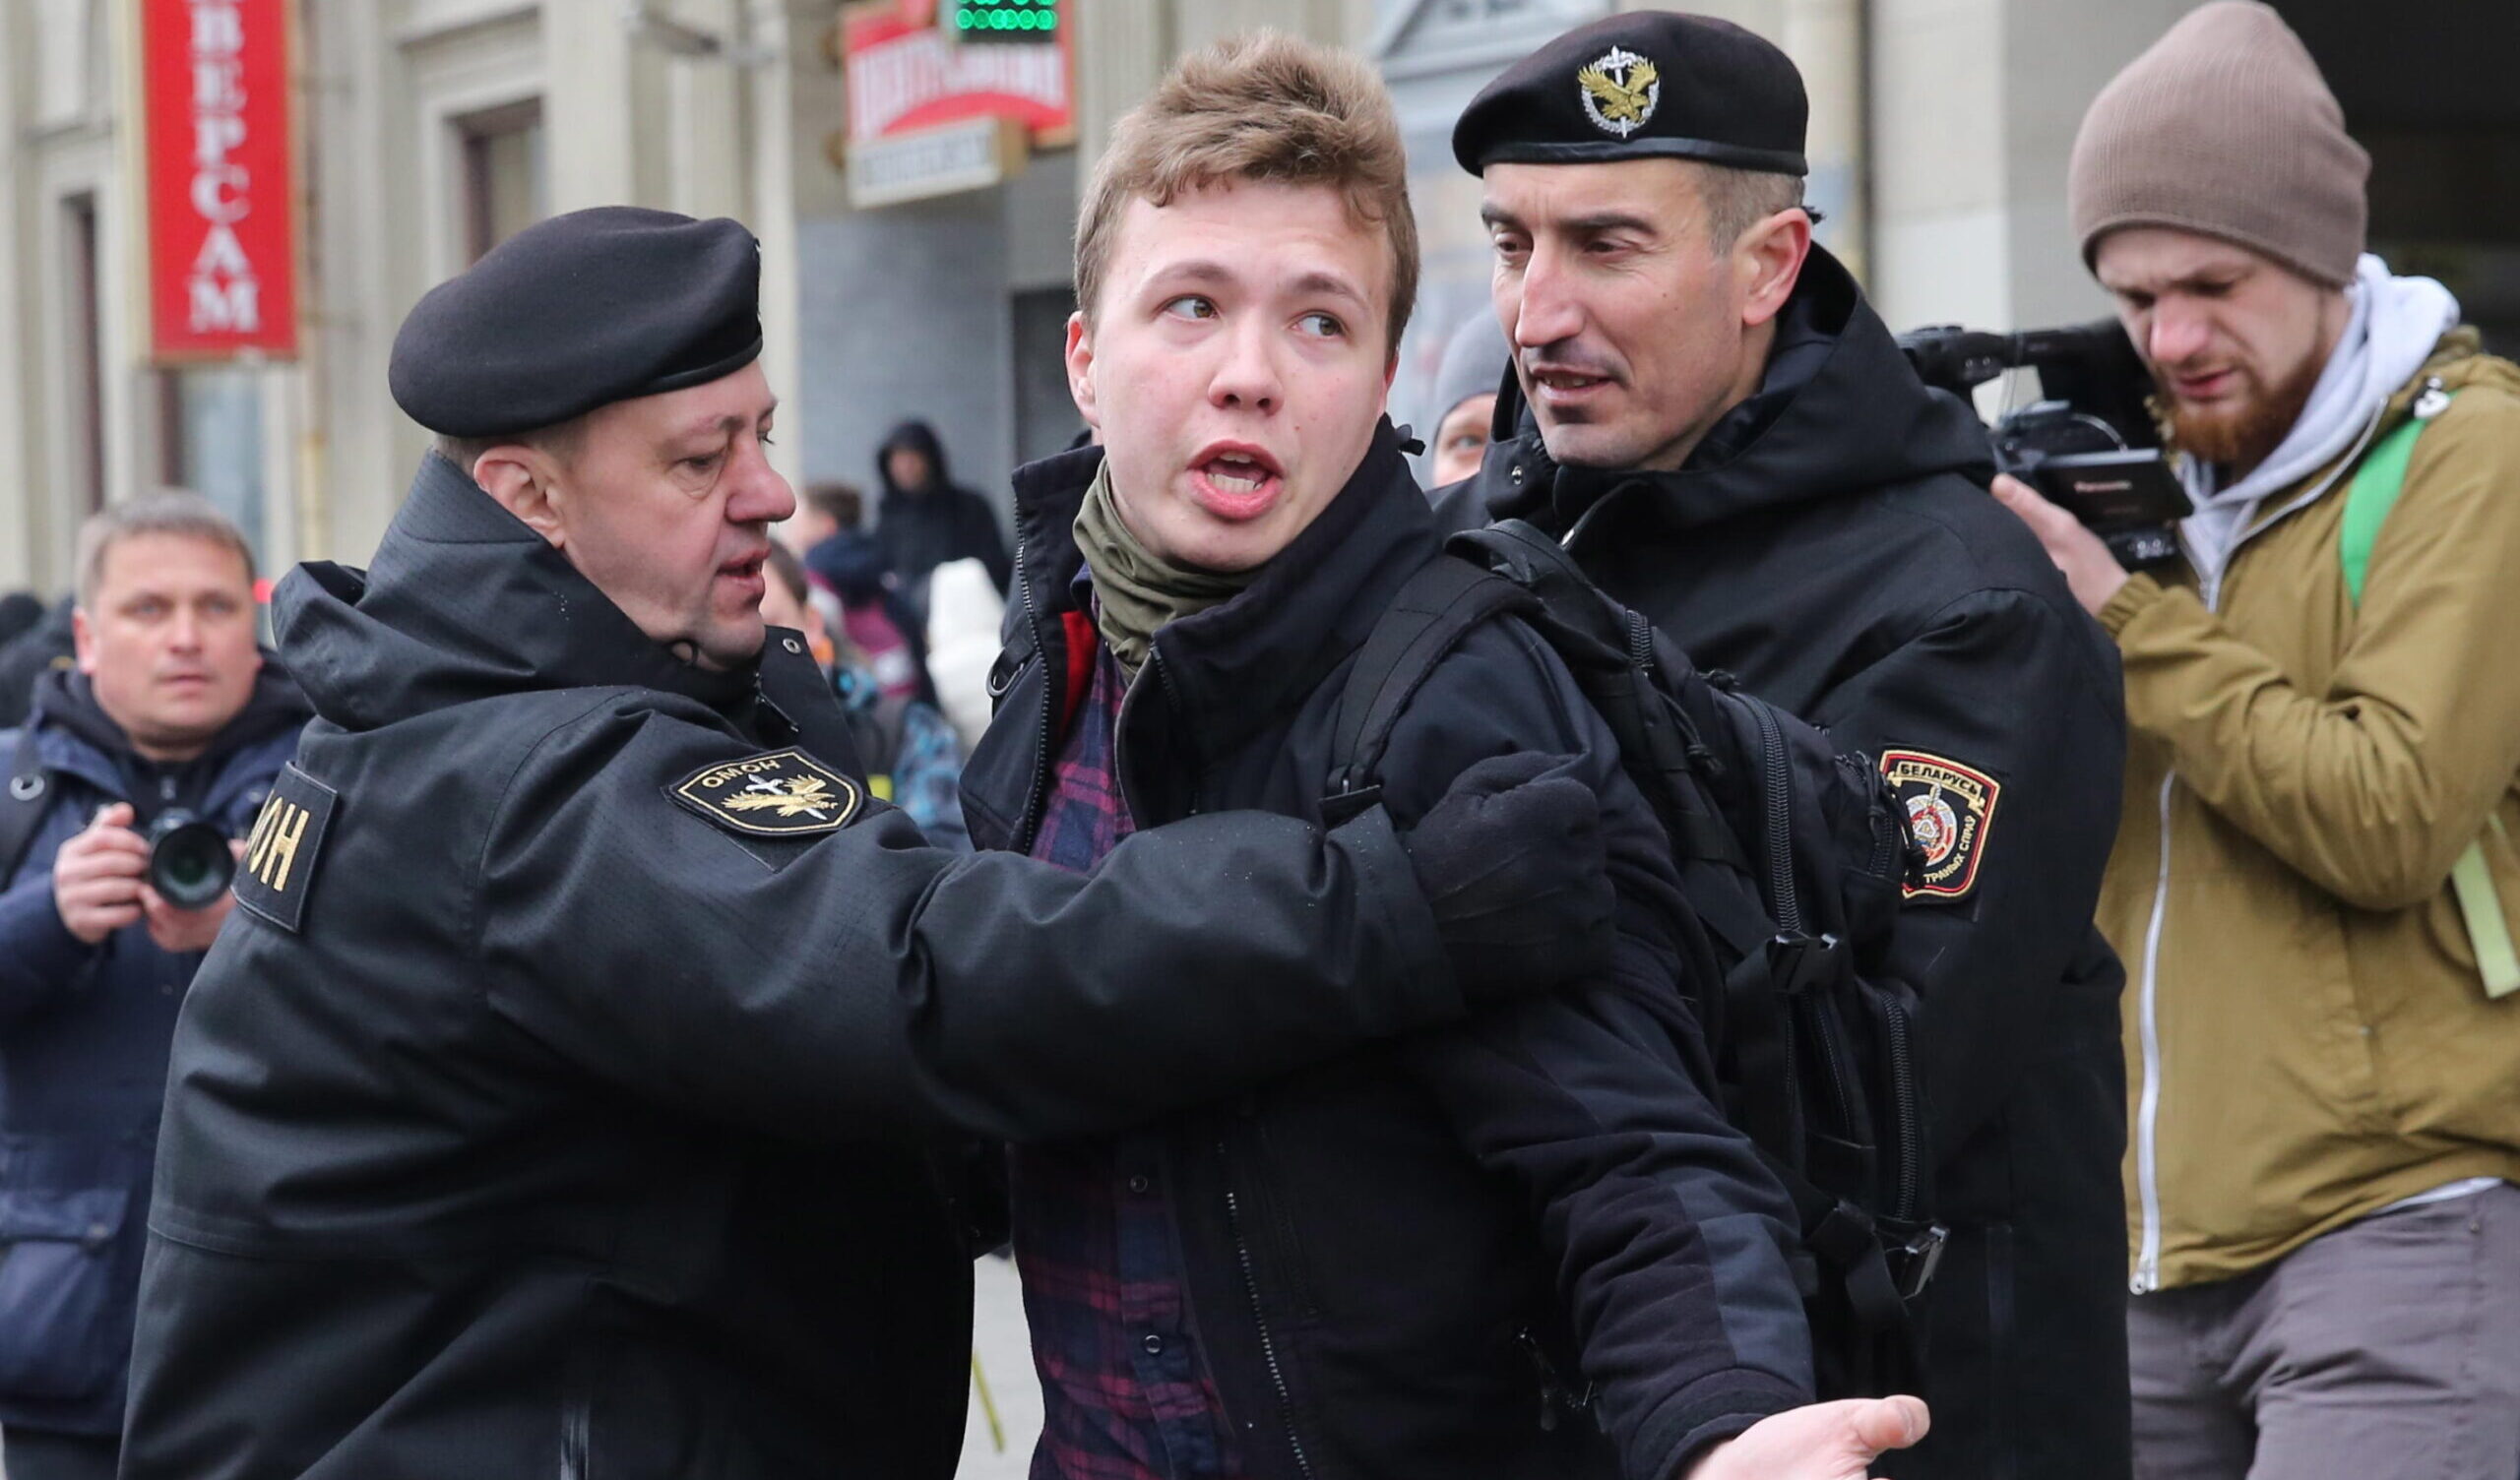 Bielorussia, condannato a 8 anni l'oppositore Protasevich accusato di 'terrorismo"